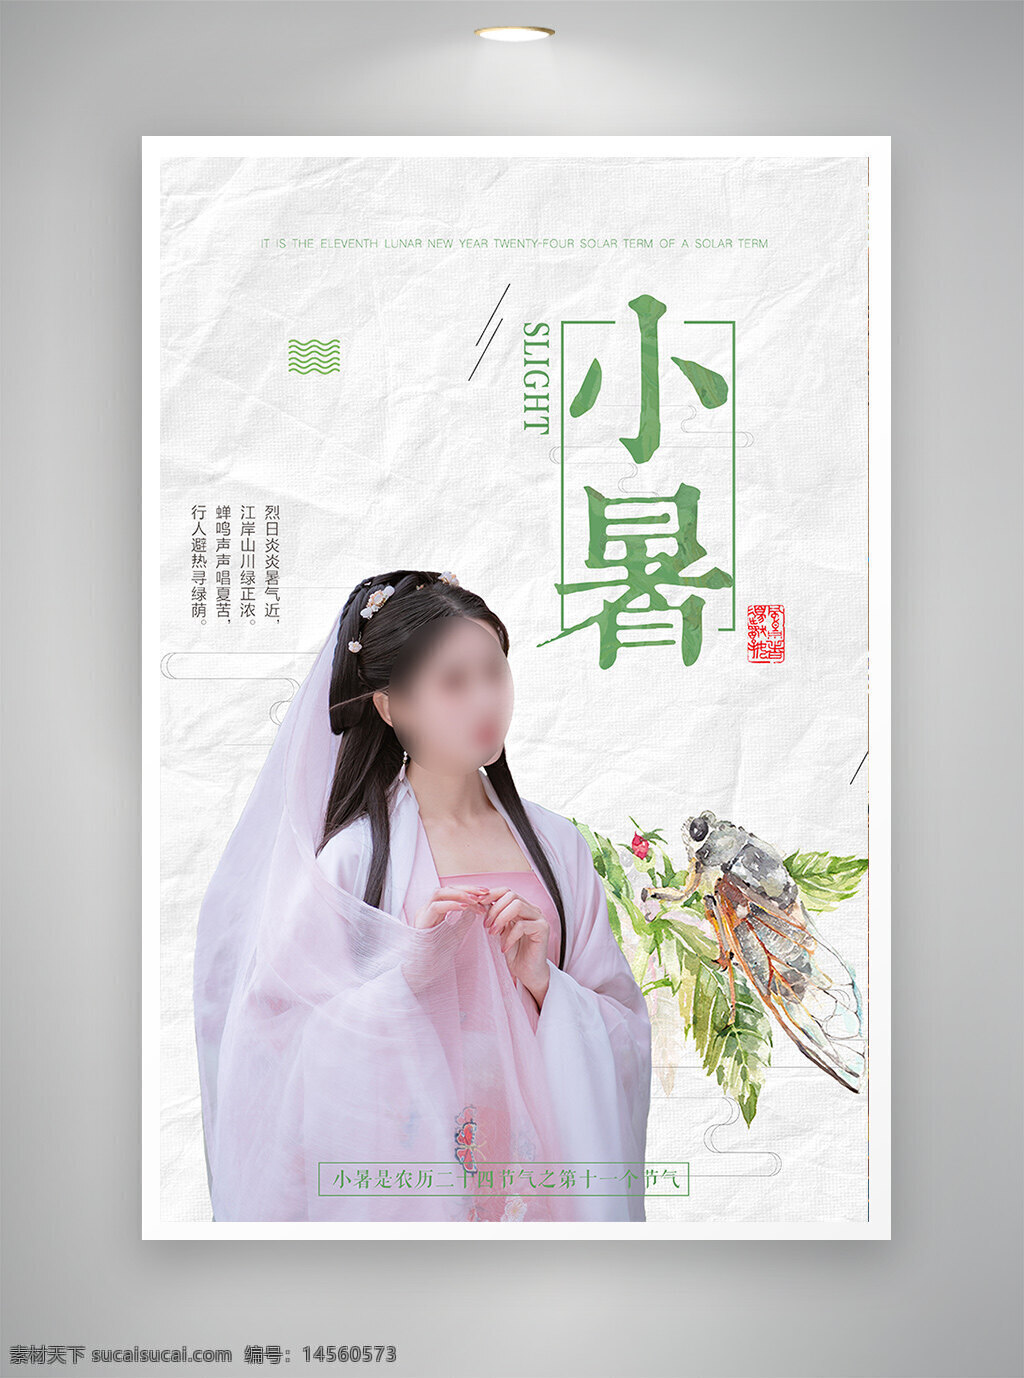 中国风海报 古风海报 促销海报 节日海报 小暑海报